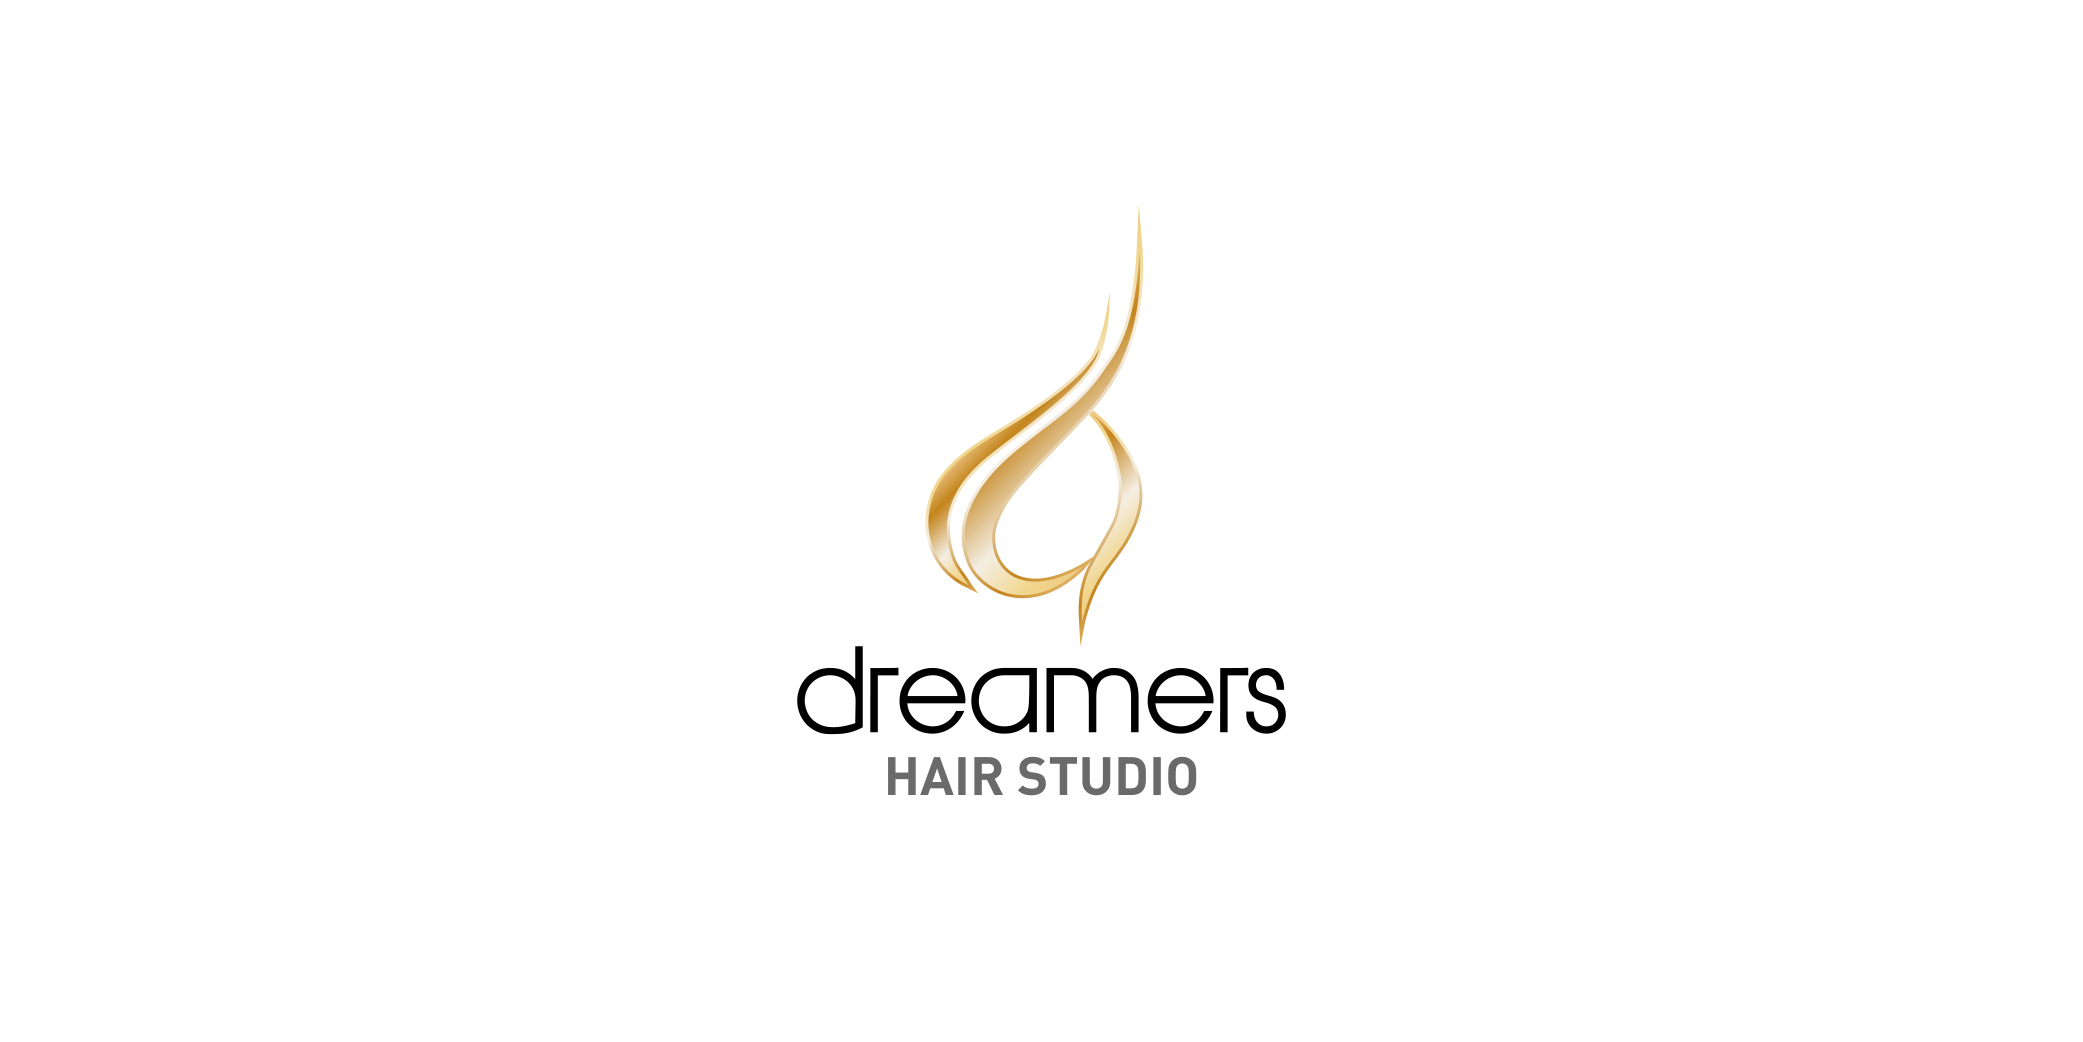 Dreamers Hair Studio